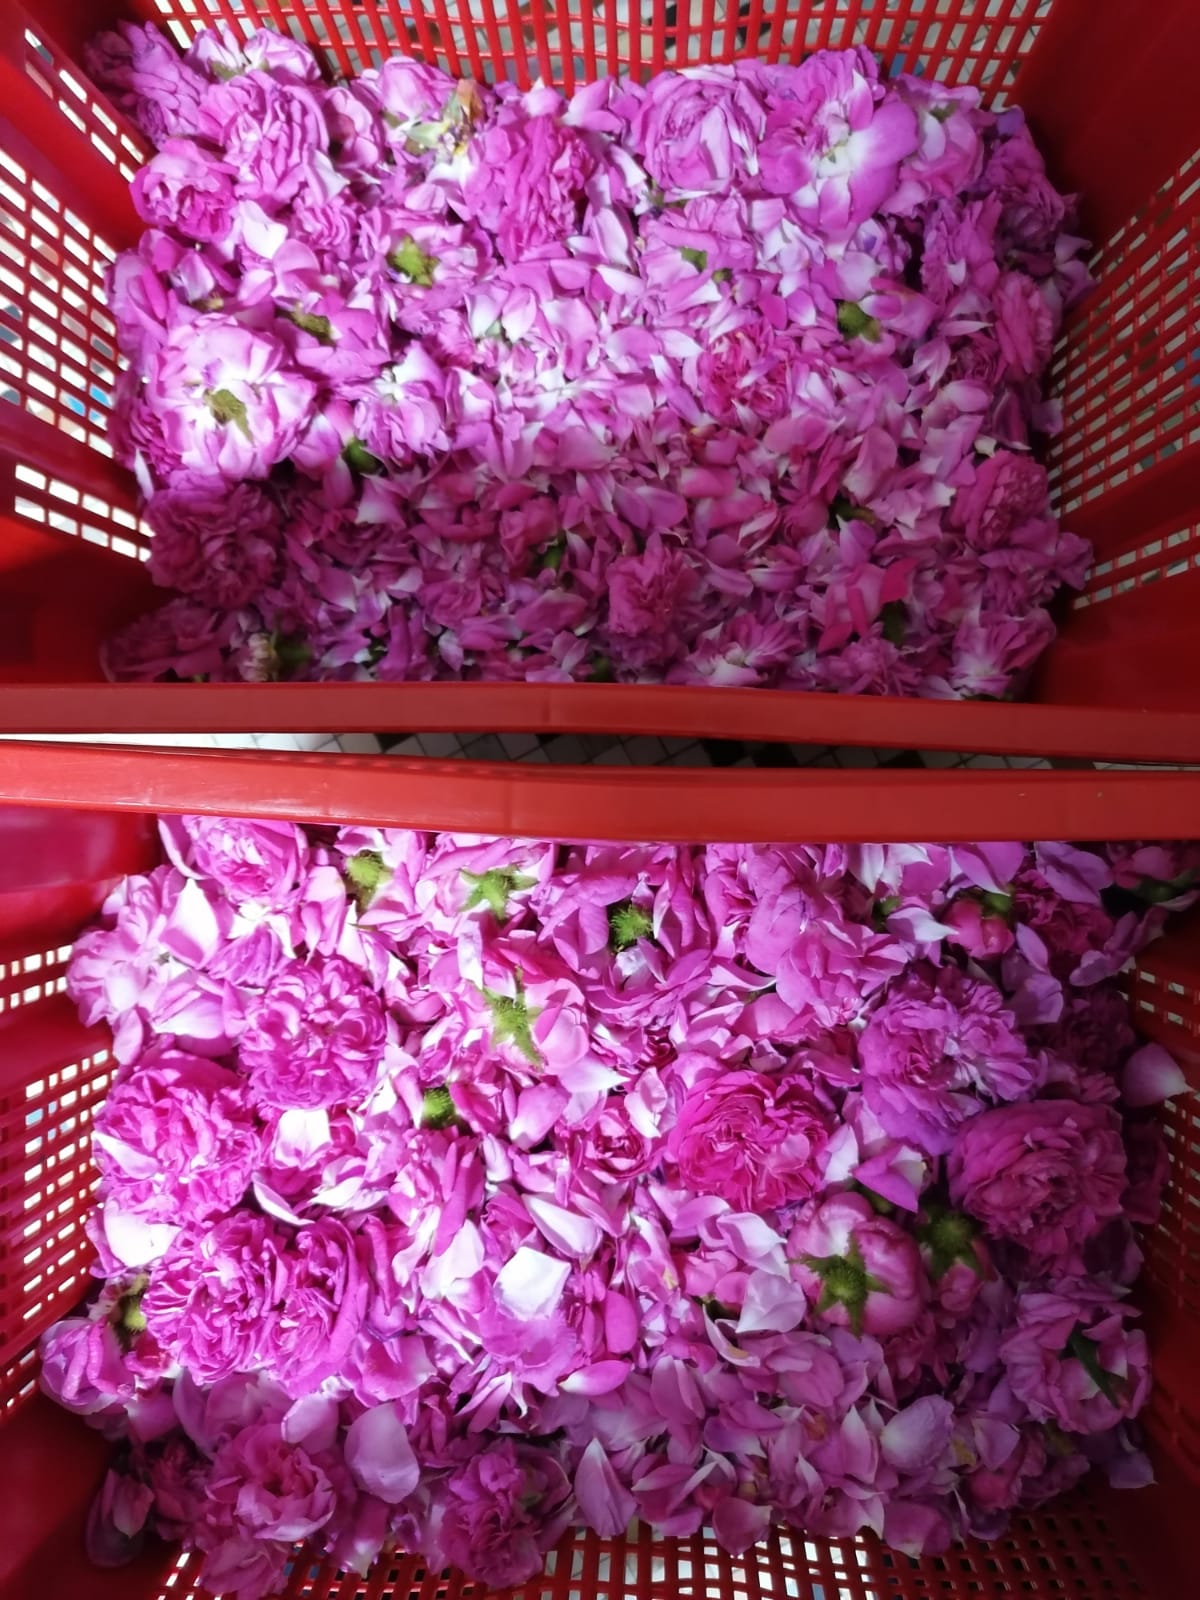 a crate of rose petals